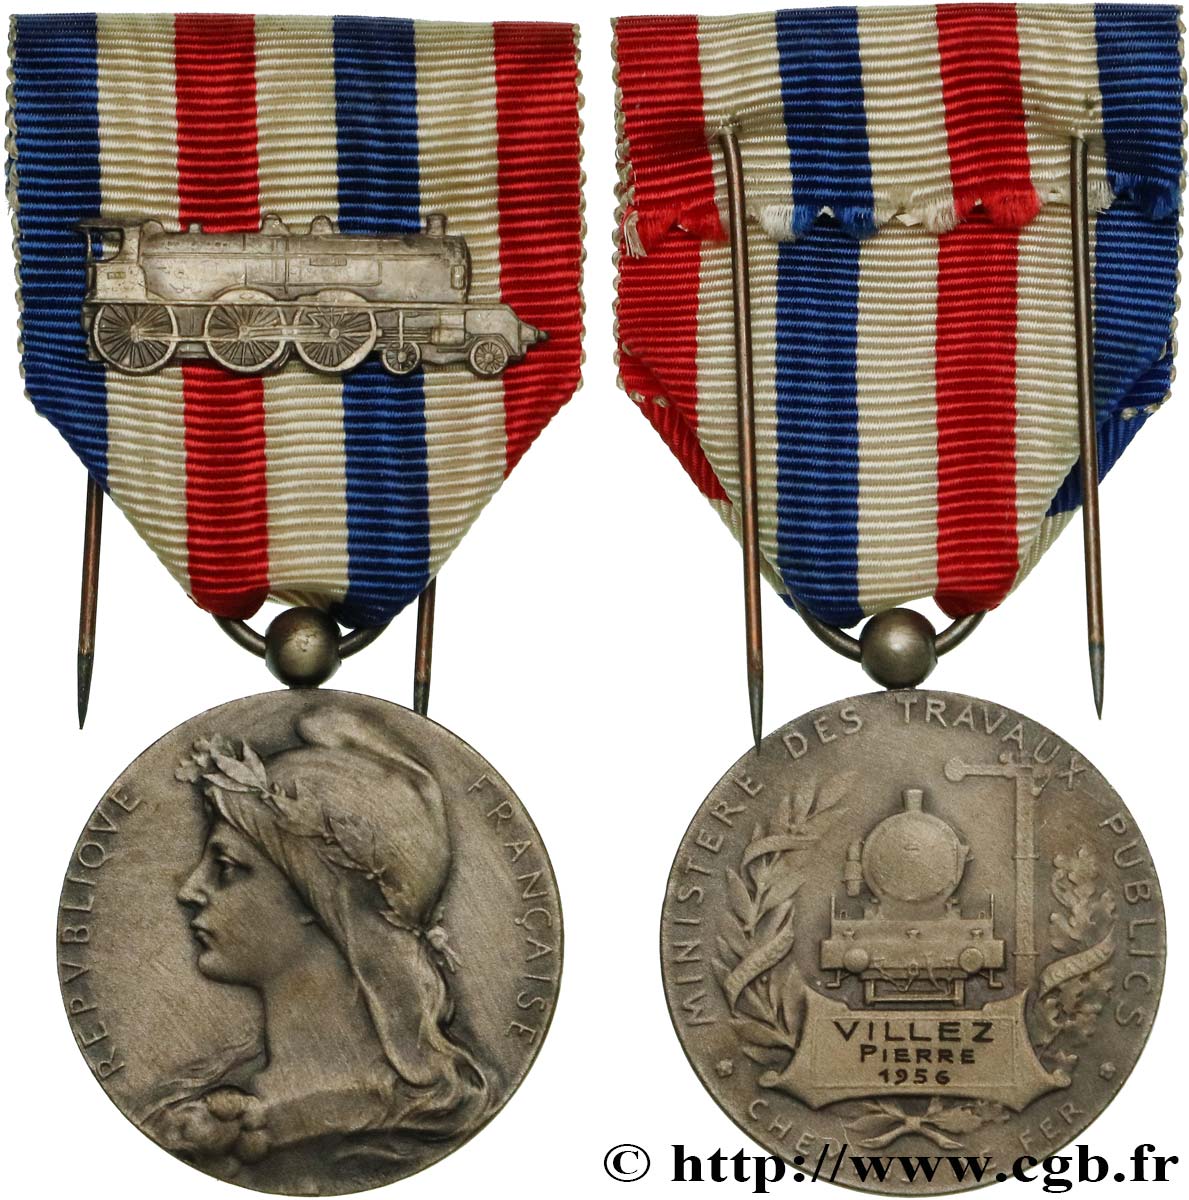 QUARTA REPUBBLICA FRANCESE Médaille des Chemins de Fer, Ministère des travaux publics BB